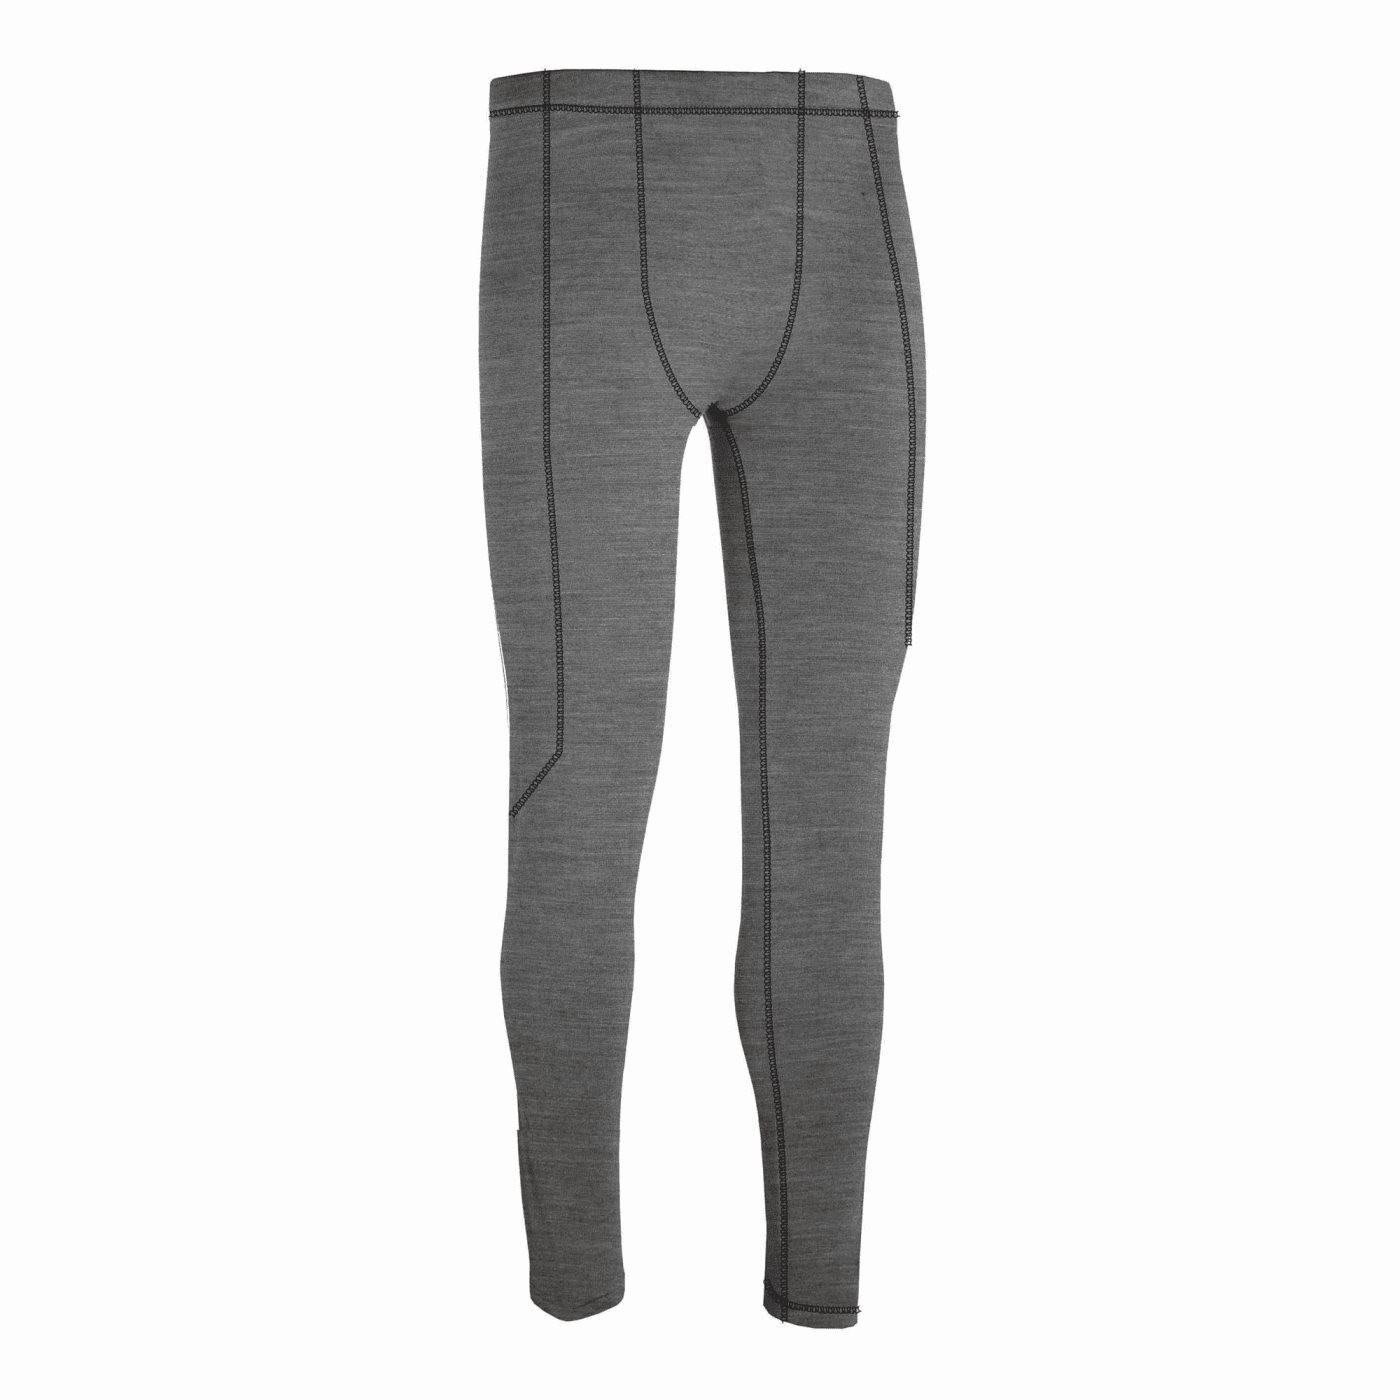 tucano urbano pantalone intimo termico calzamelio grigio melange taglia m uomo